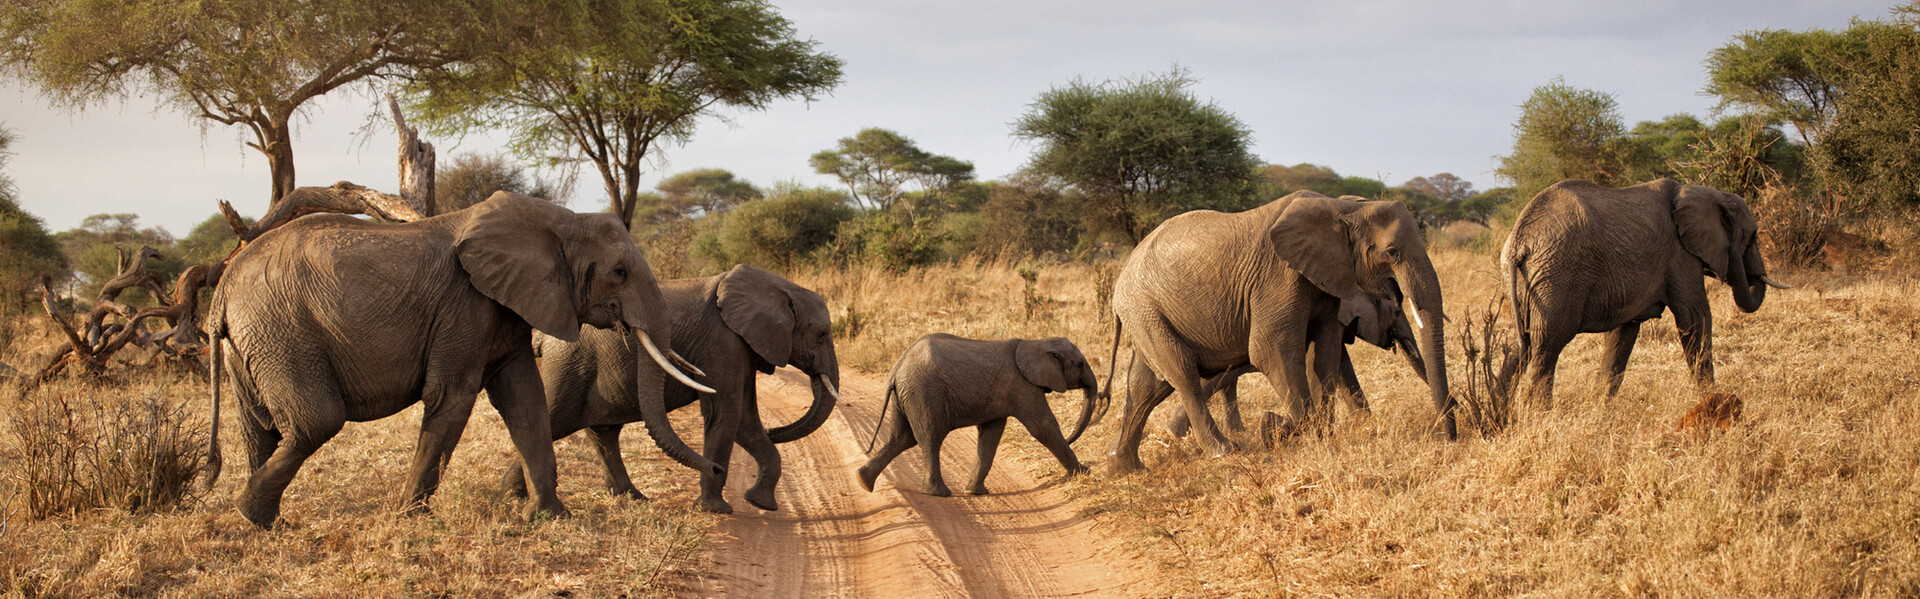 Een safari in Afrika